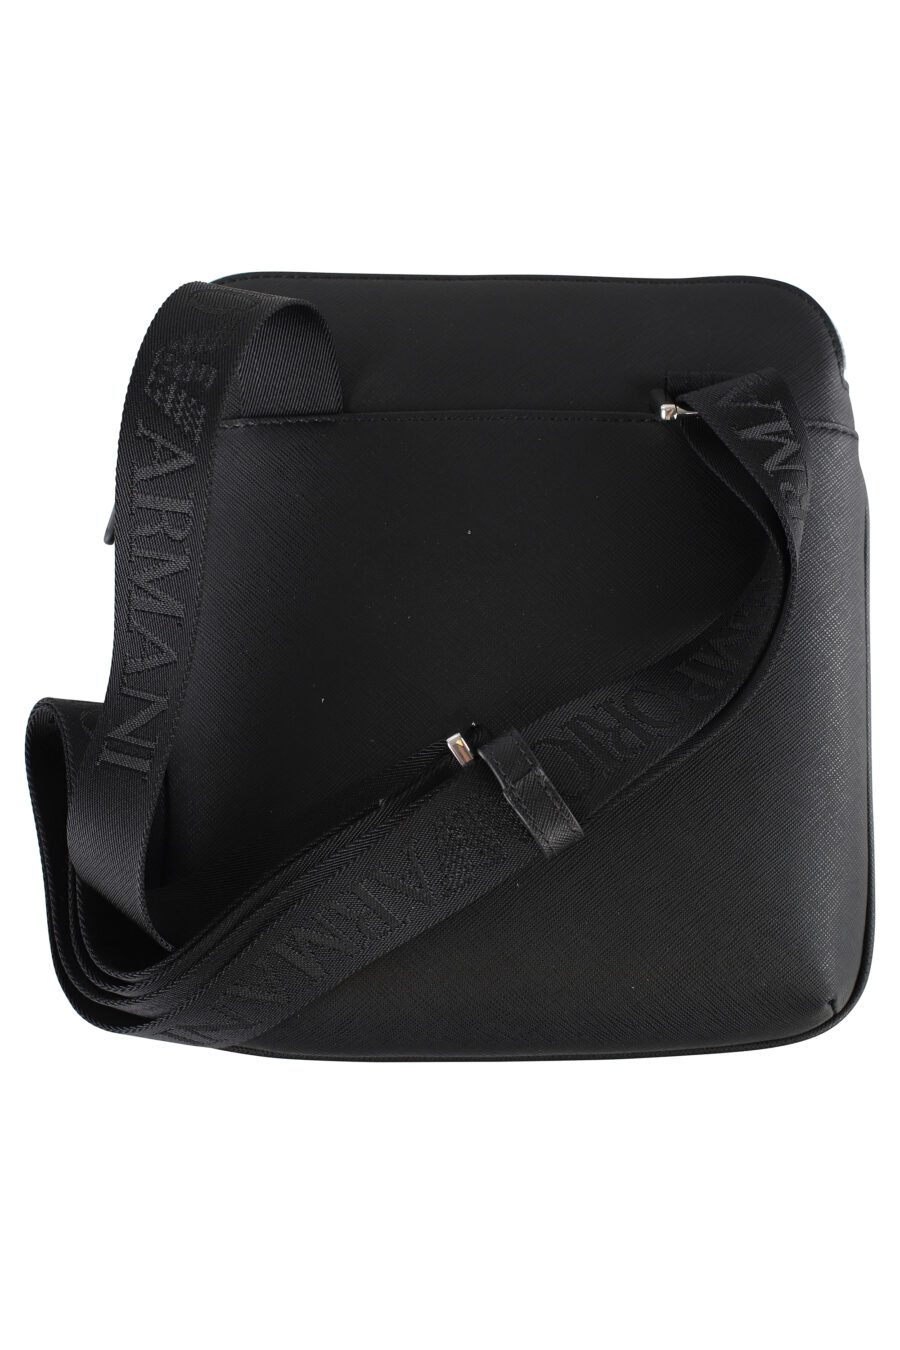 Black shoulder bag with eagle logo - IMG 5277